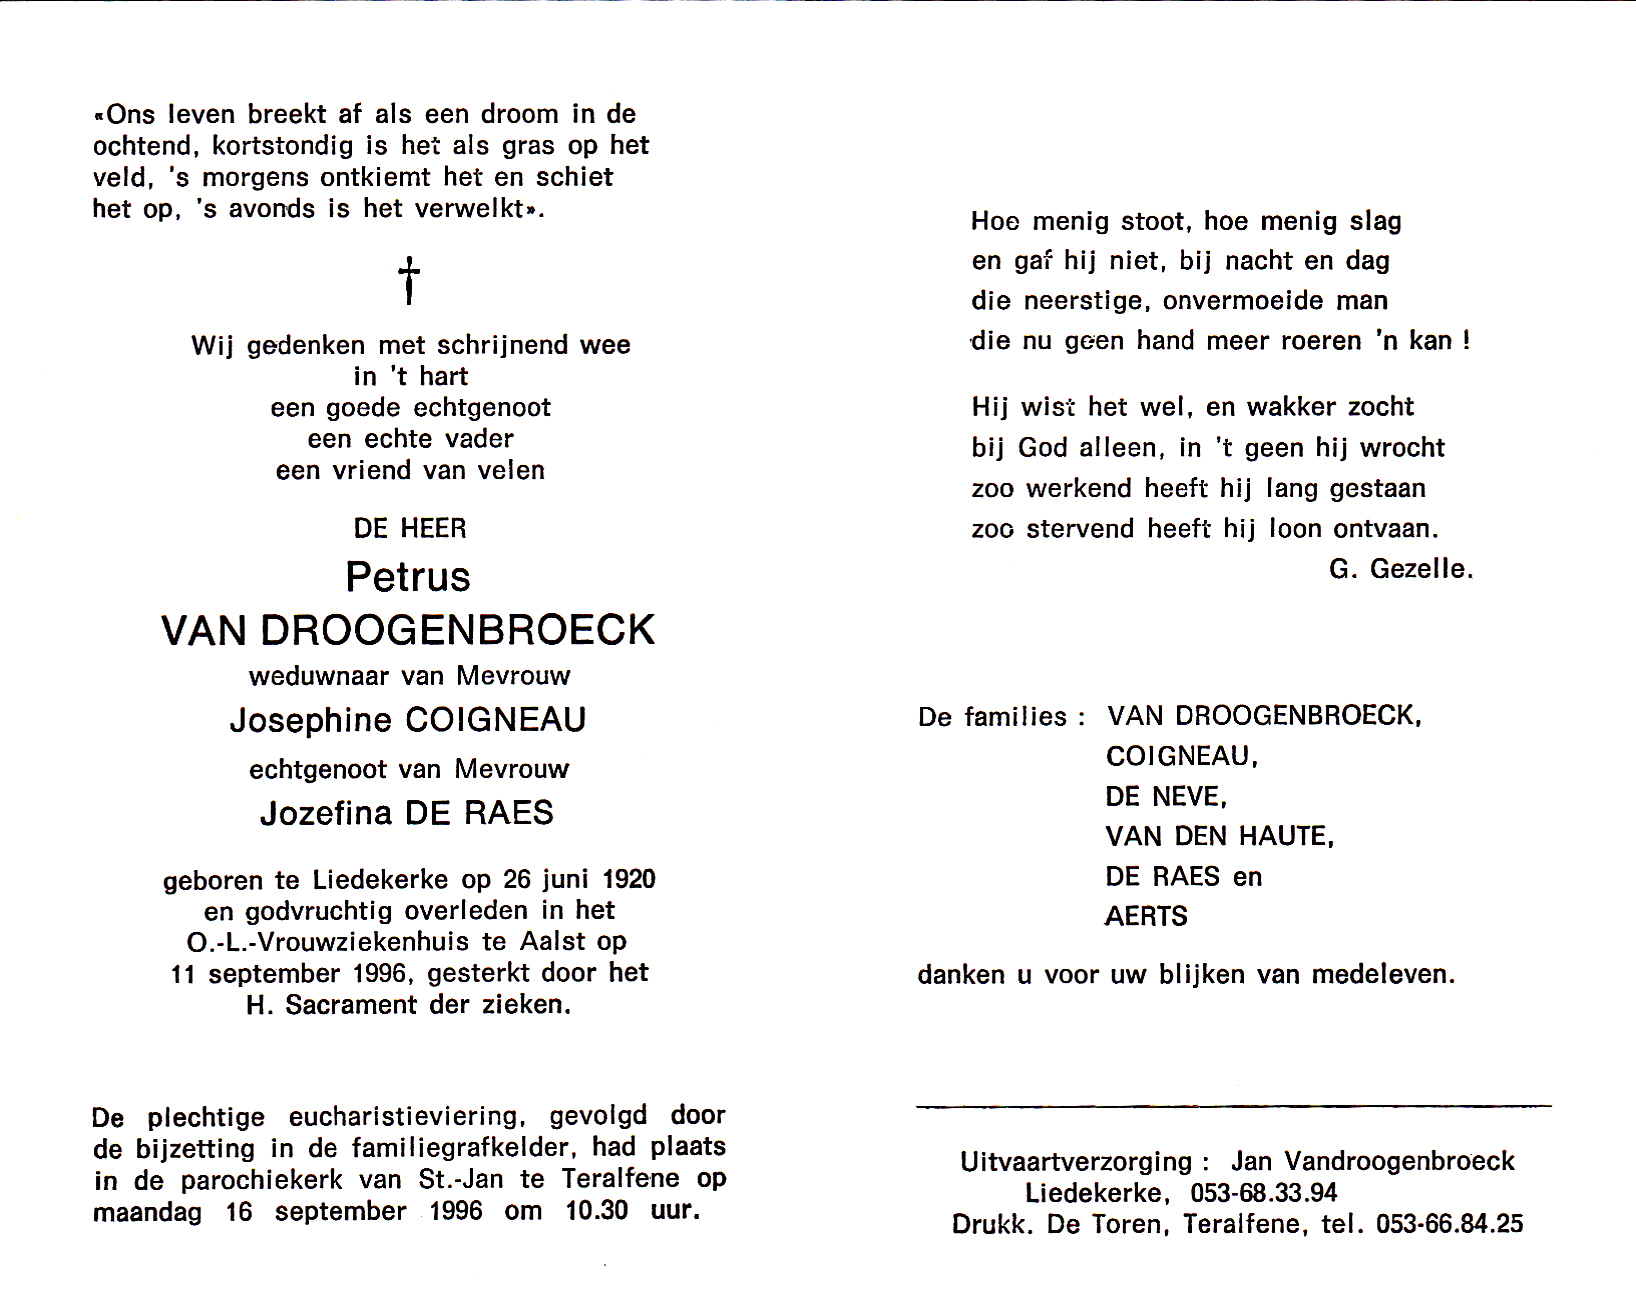 Van Droogenbroeck Petrus (x C,DR)